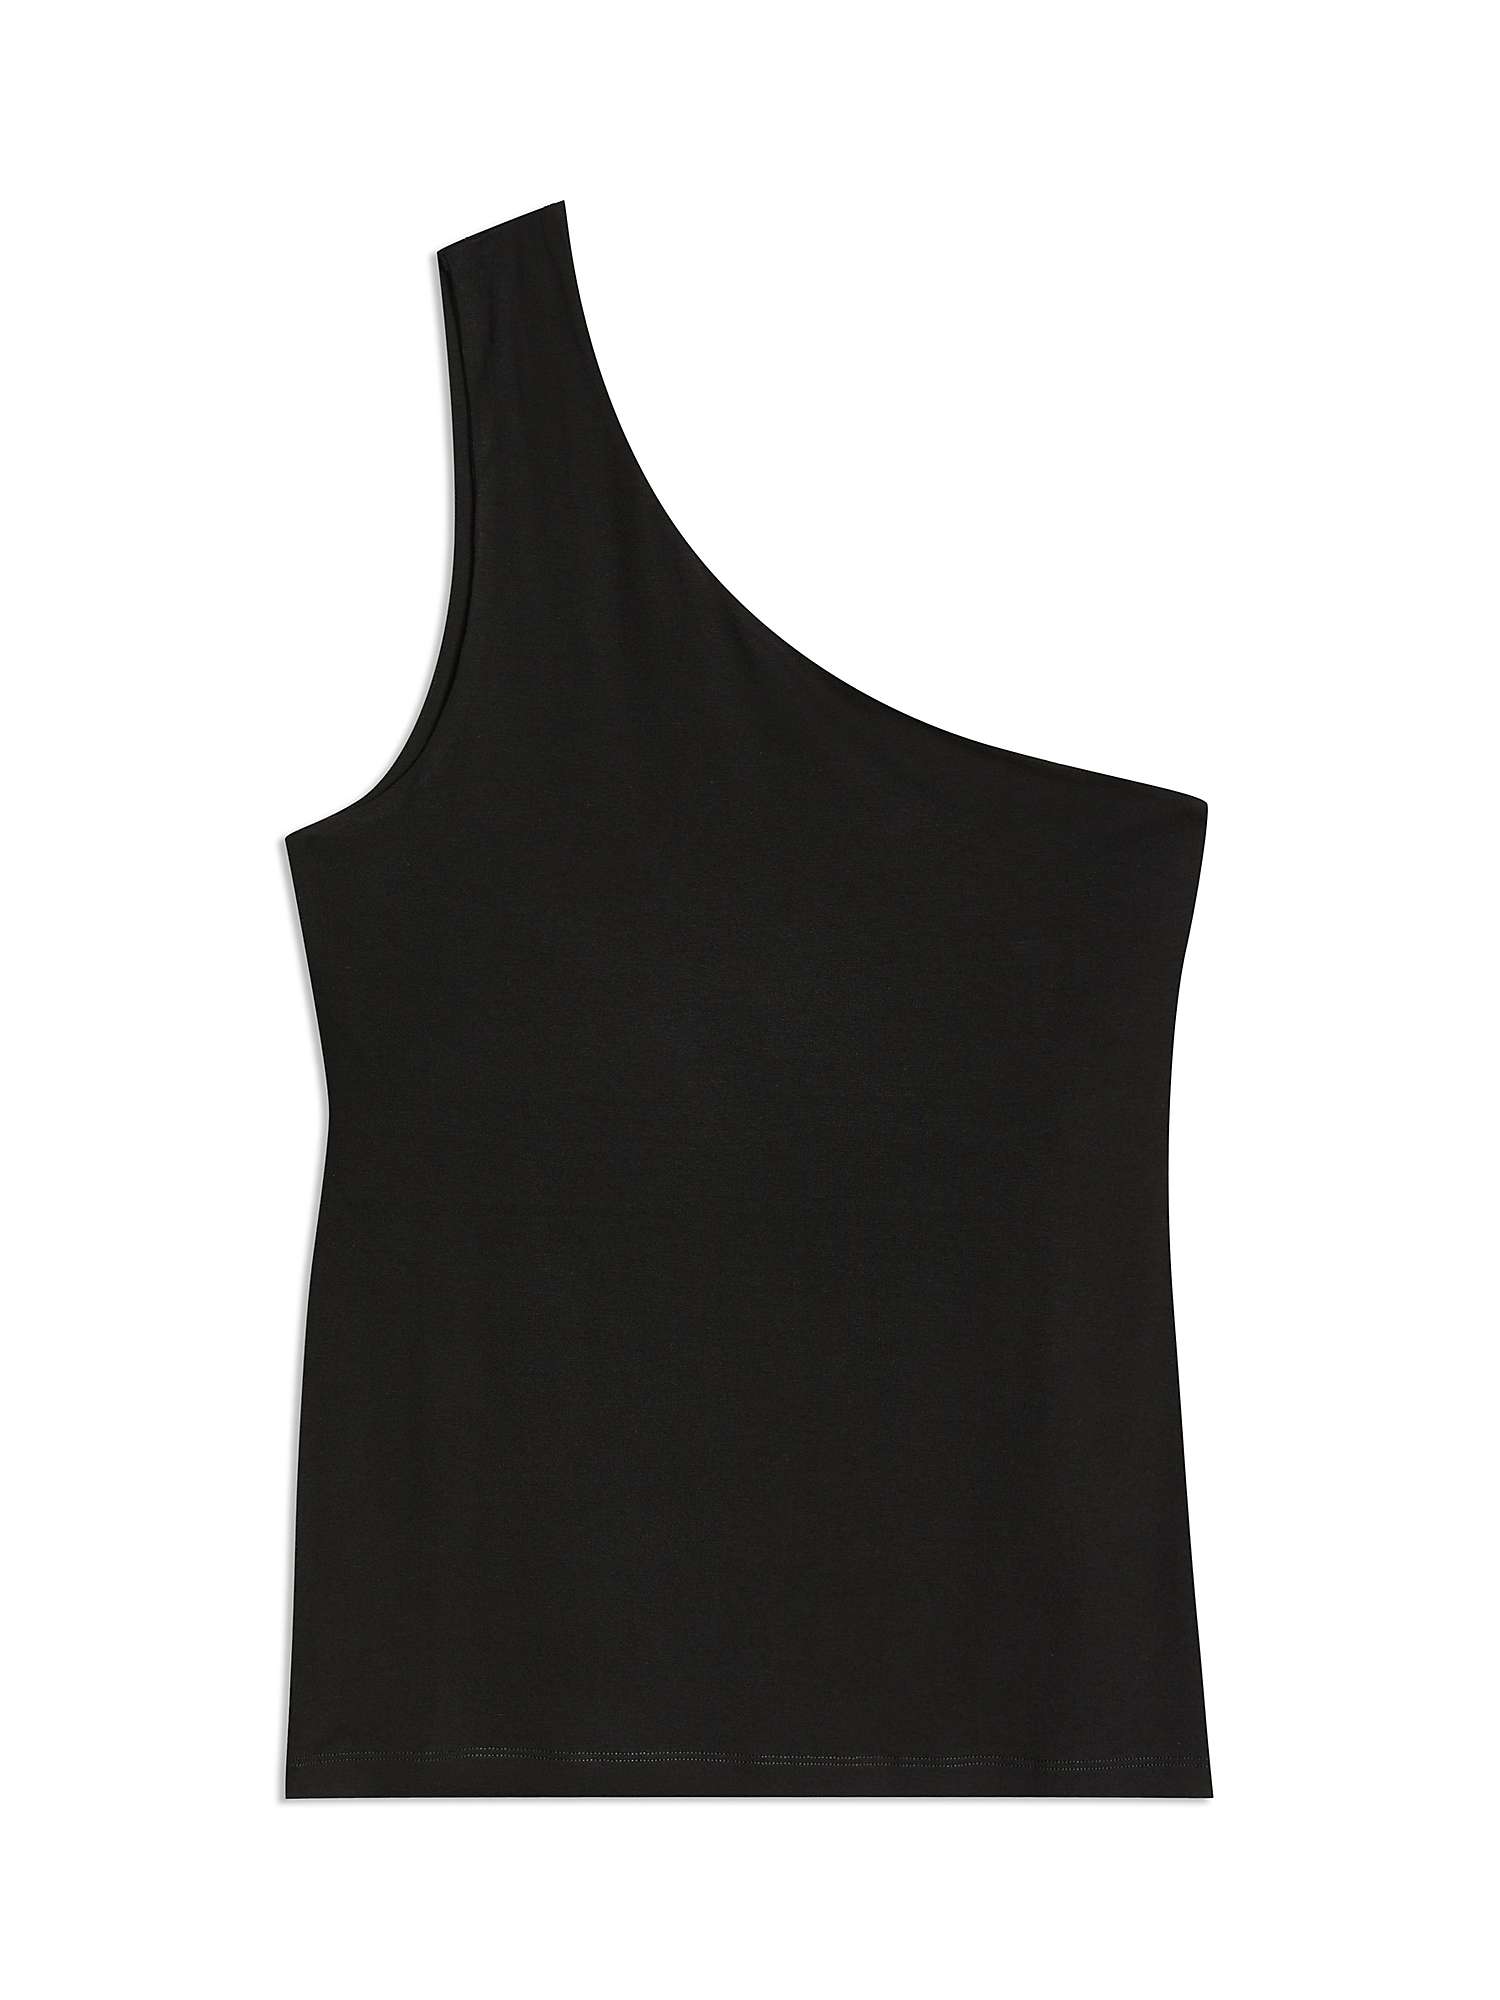 Buy Albaray One Shoulder Top, Black Online at johnlewis.com